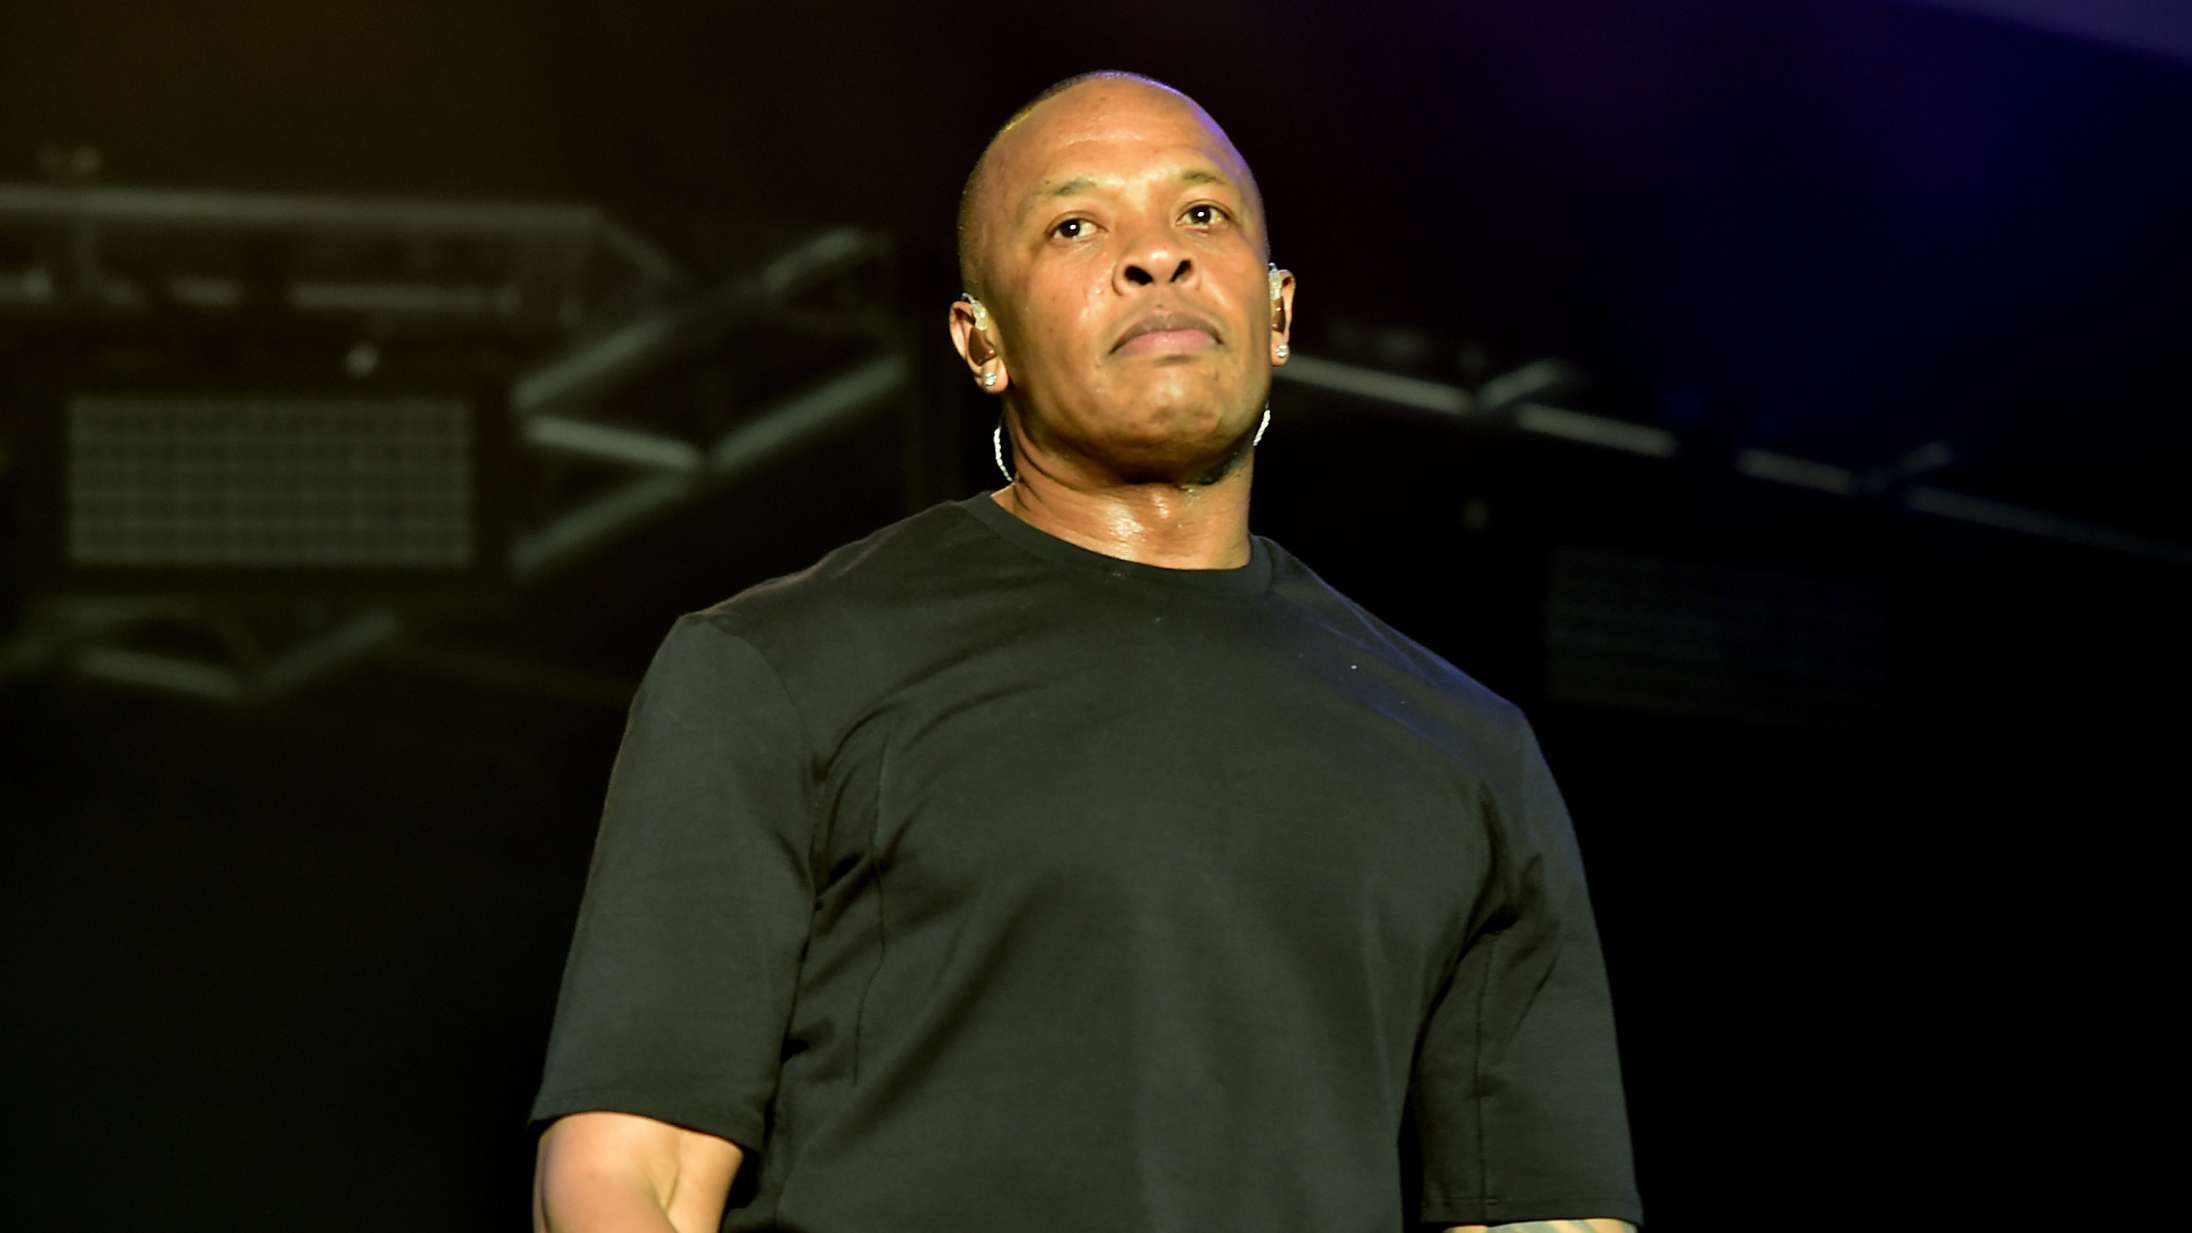 Hør seks nye sange fra Dr. Dre – med Eminem, Anderson .Paak, Snoop Dogg og flere gæster